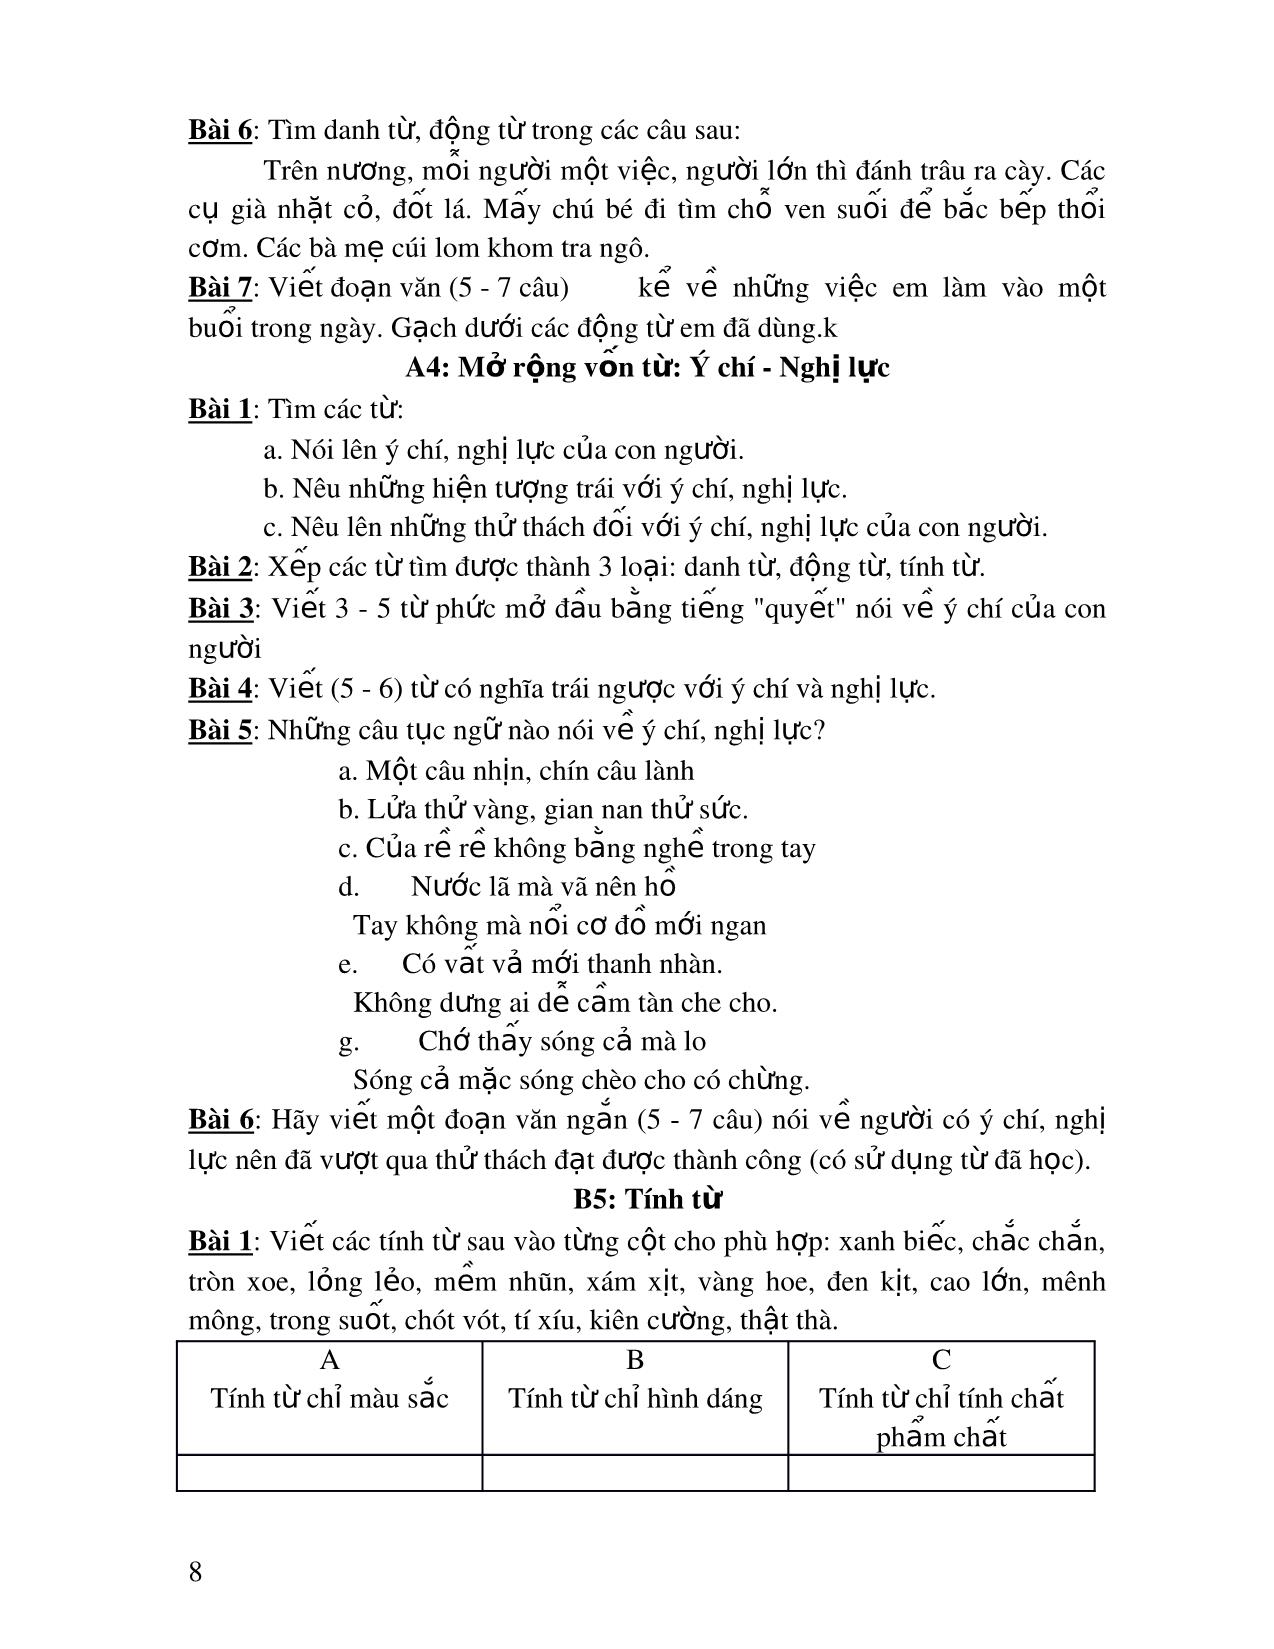 Bài ôn tập môn Tiếng Việt 3 trang 8